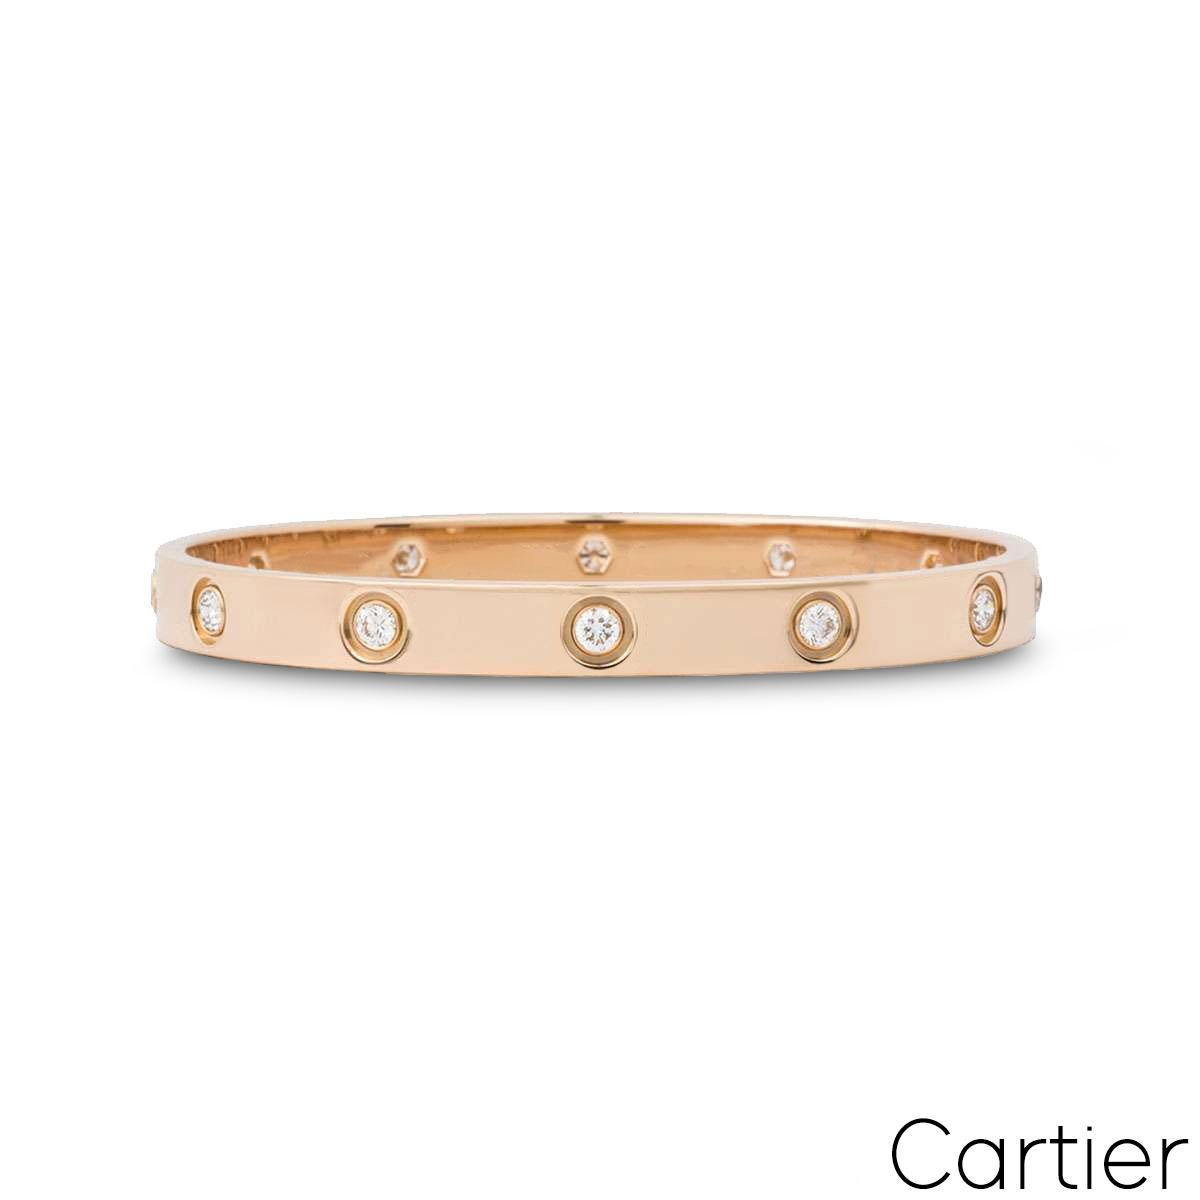 Un bracelet en or rose 18 carats plein diamant de Cartier de la collection Love. Le bracelet est serti de 10 diamants ronds de taille brillant circulant sur le bord extérieur dans un serti rubover pour un total de 0,96ct. Le bracelet, de taille 16,